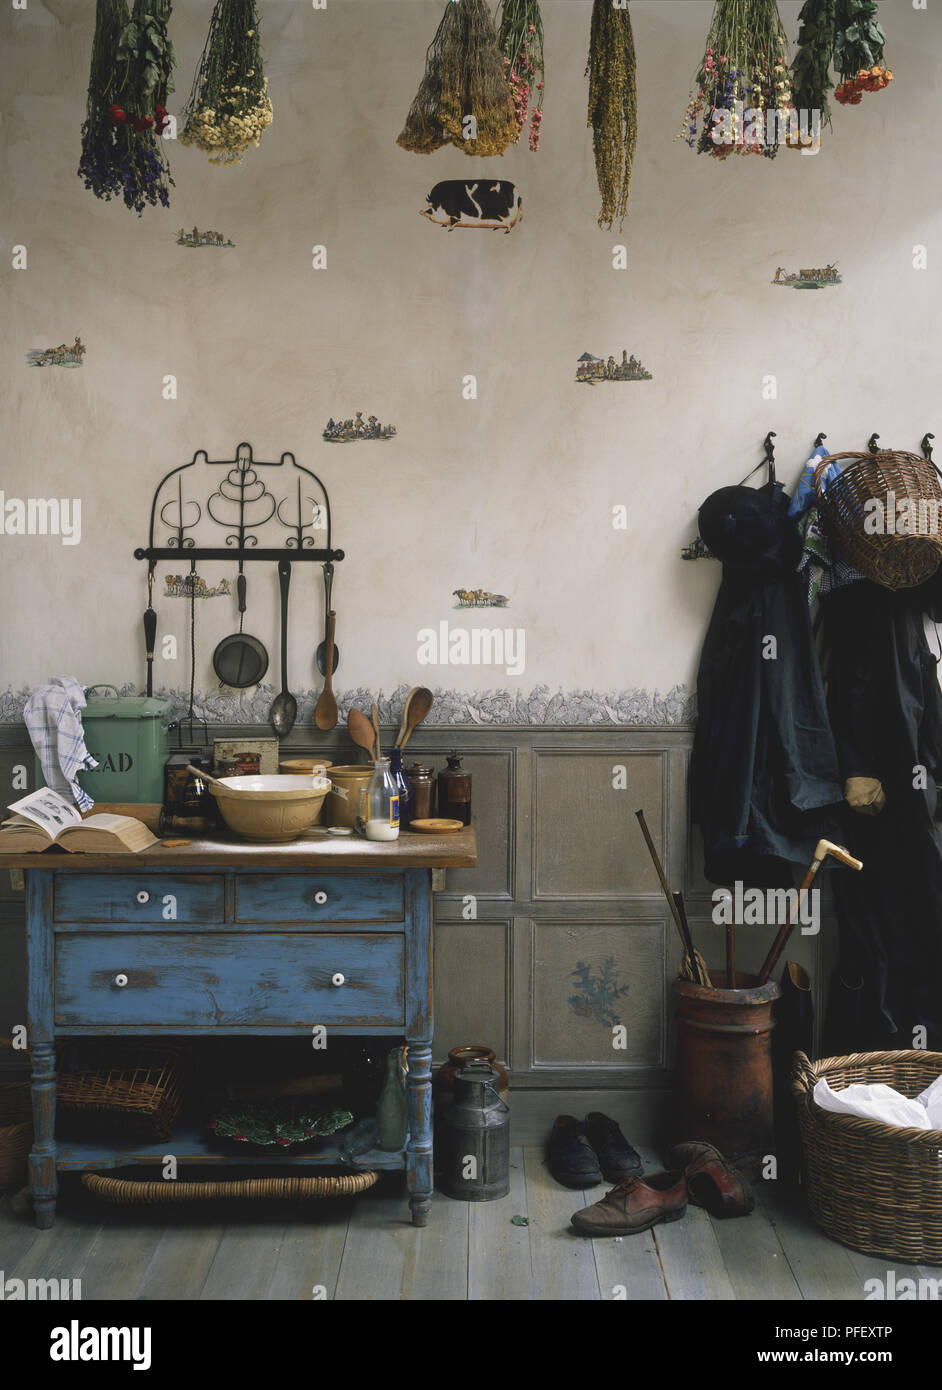 Une salle rustique contenant des ustensiles de cuisine sur un tableau bleu, les plantes séchées qui pendait au plafond, manteaux sur des crochets sur le mur, panier en osier et des chaussures sur marbre Banque D'Images